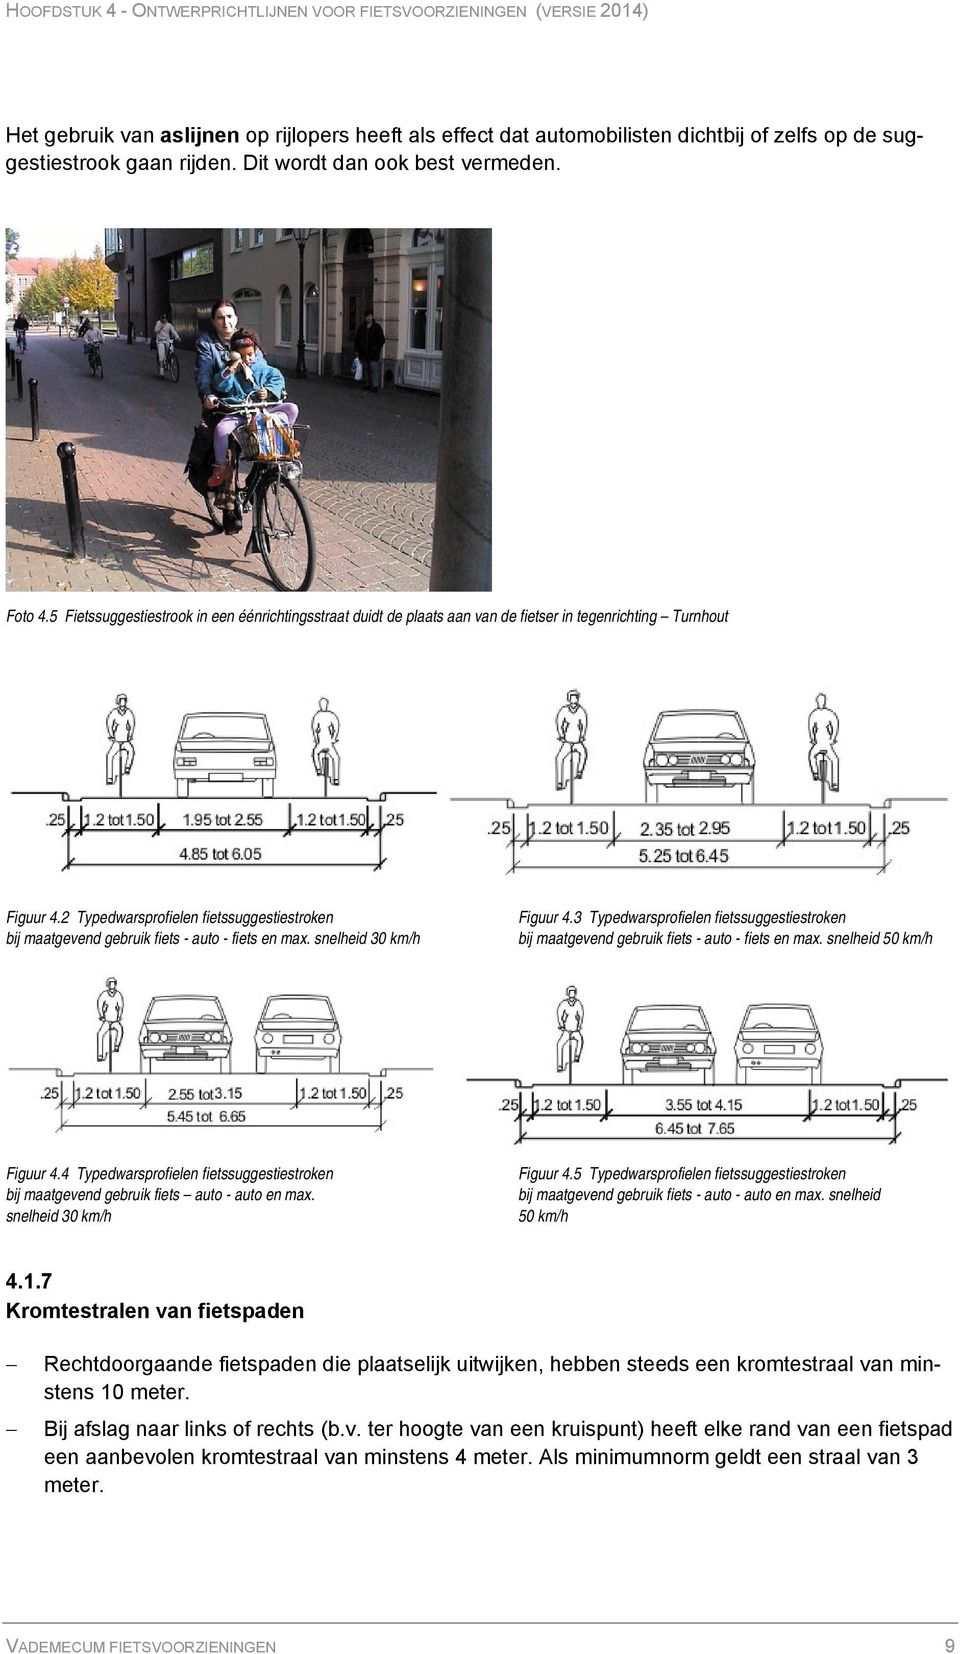 2 Typedwarsprofielen fietssuggestiestroken bij maatgevend gebruik fiets - auto - fiets en max. snelheid 30 km/h Figuur 4.